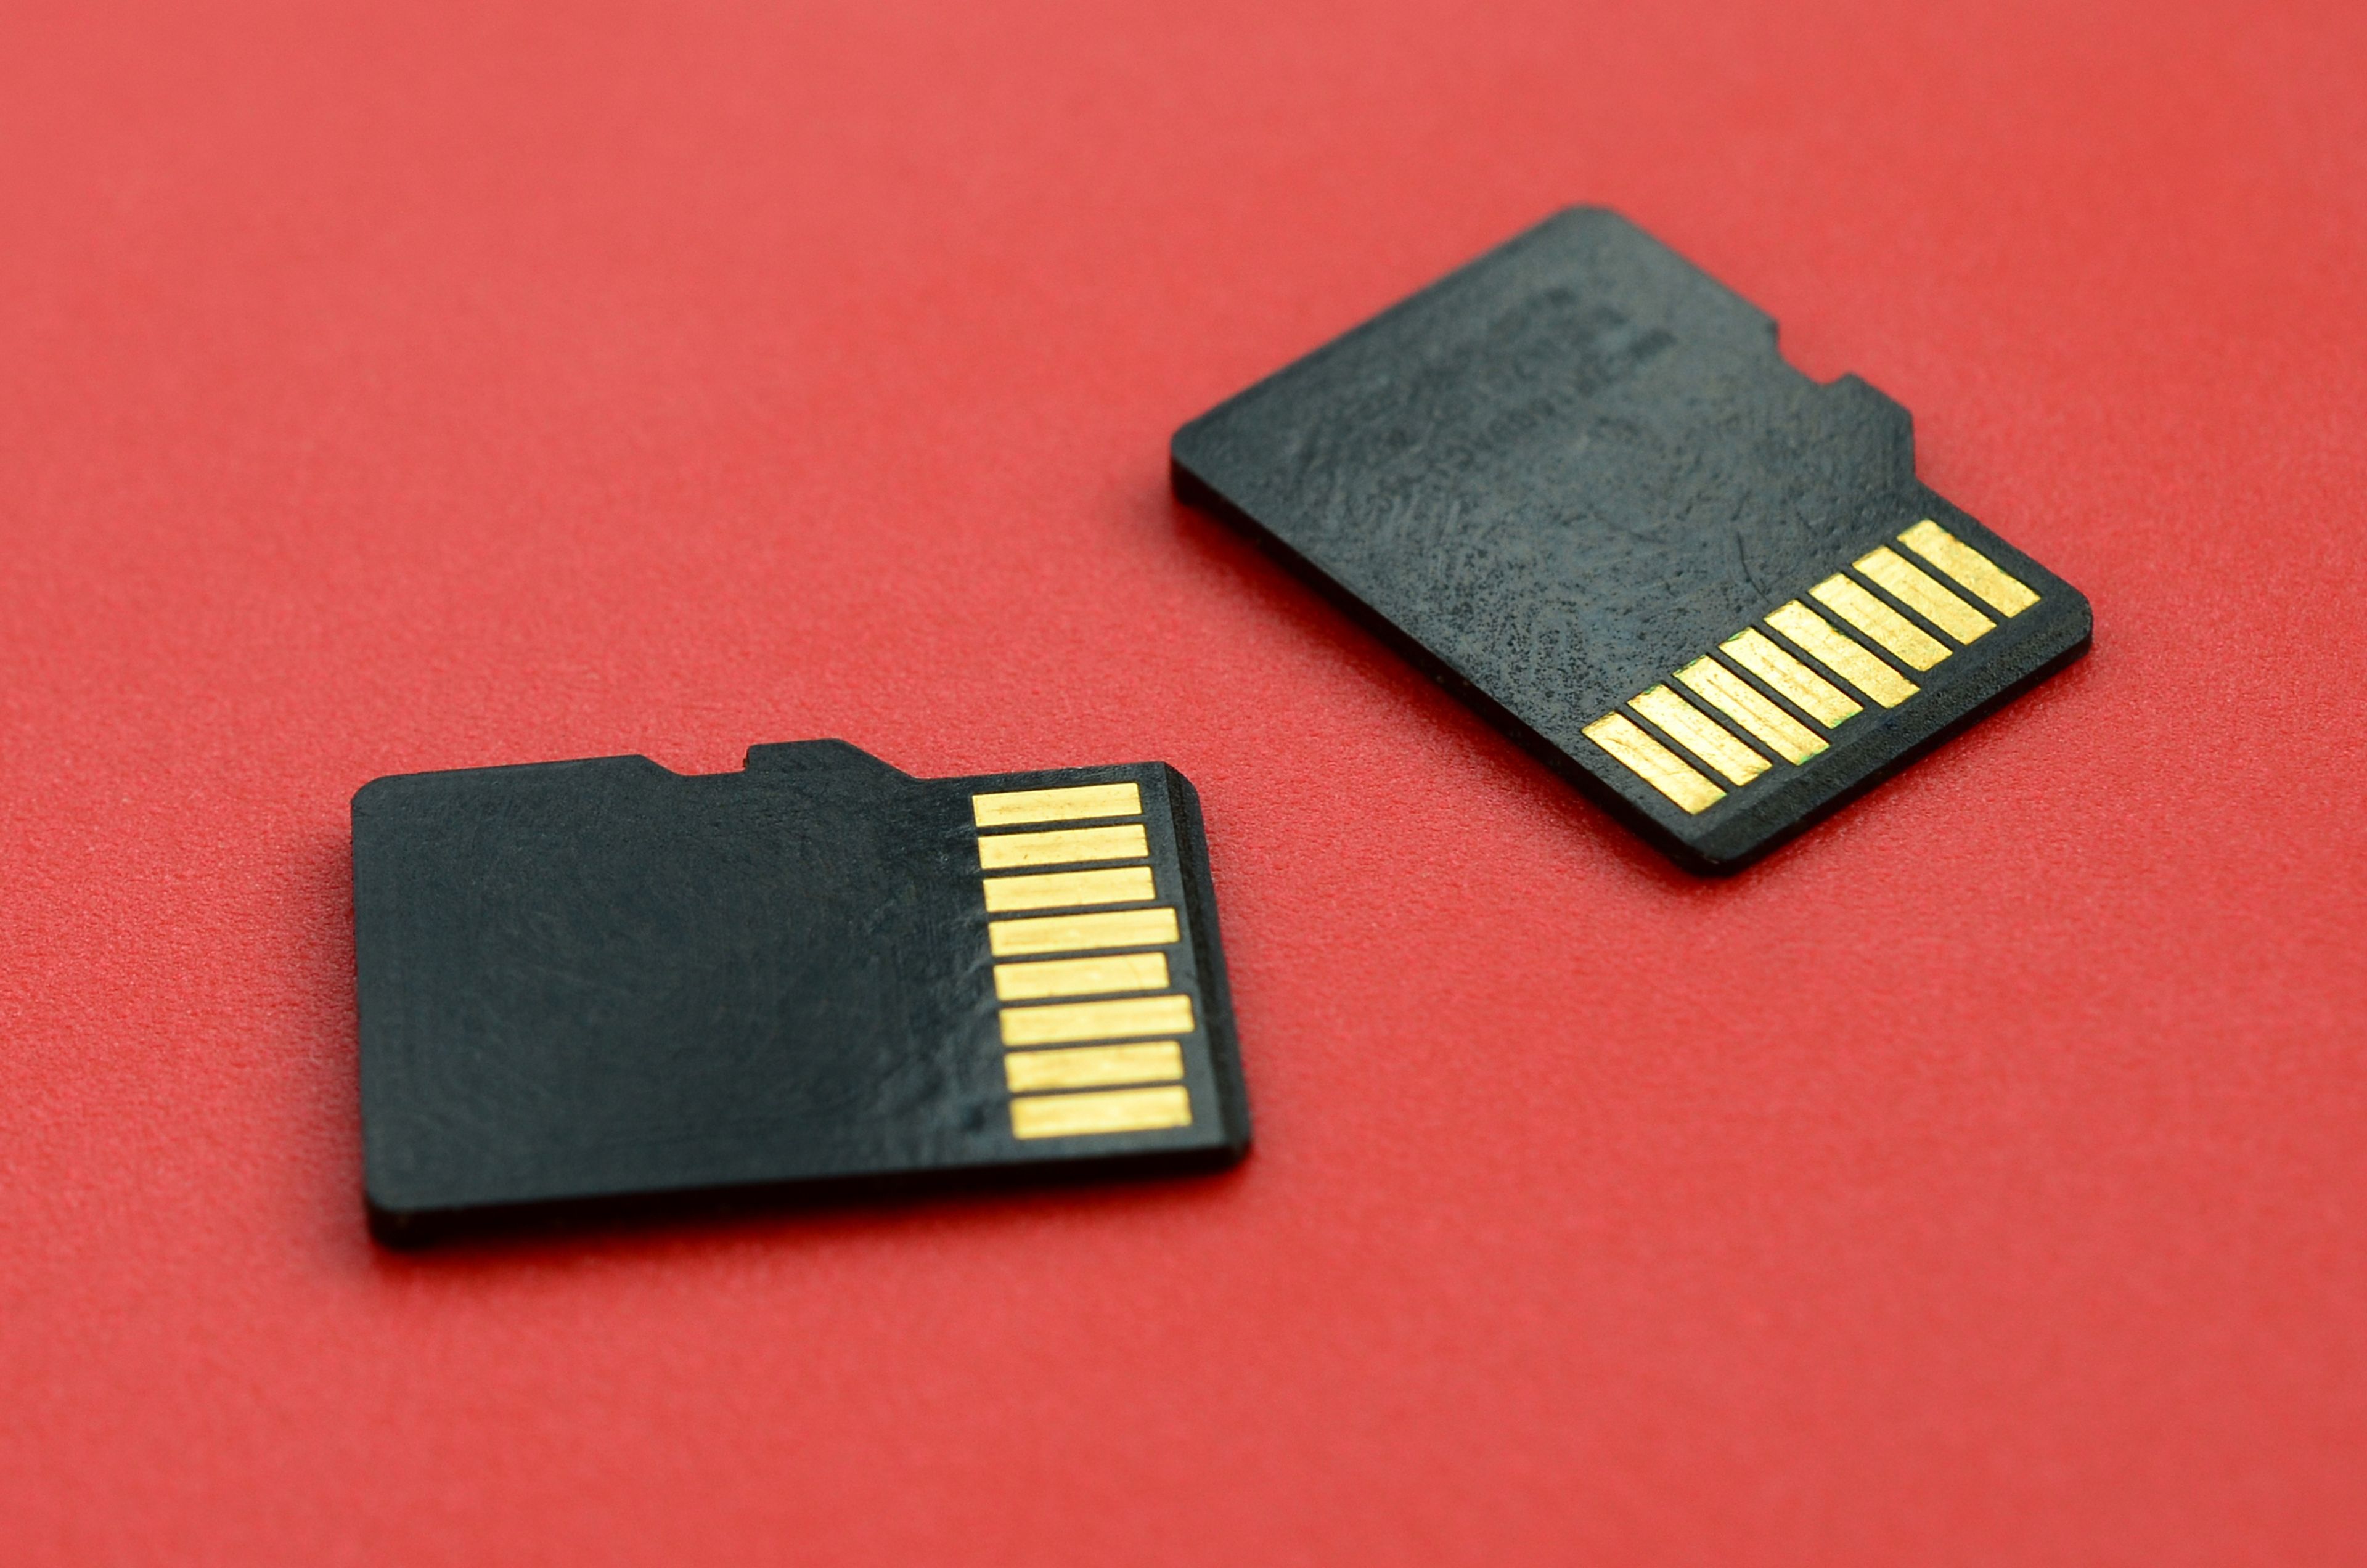 junto a añadir Absoluto Todo lo que debes saber antes de comprar una tarjeta microSD | Computer Hoy